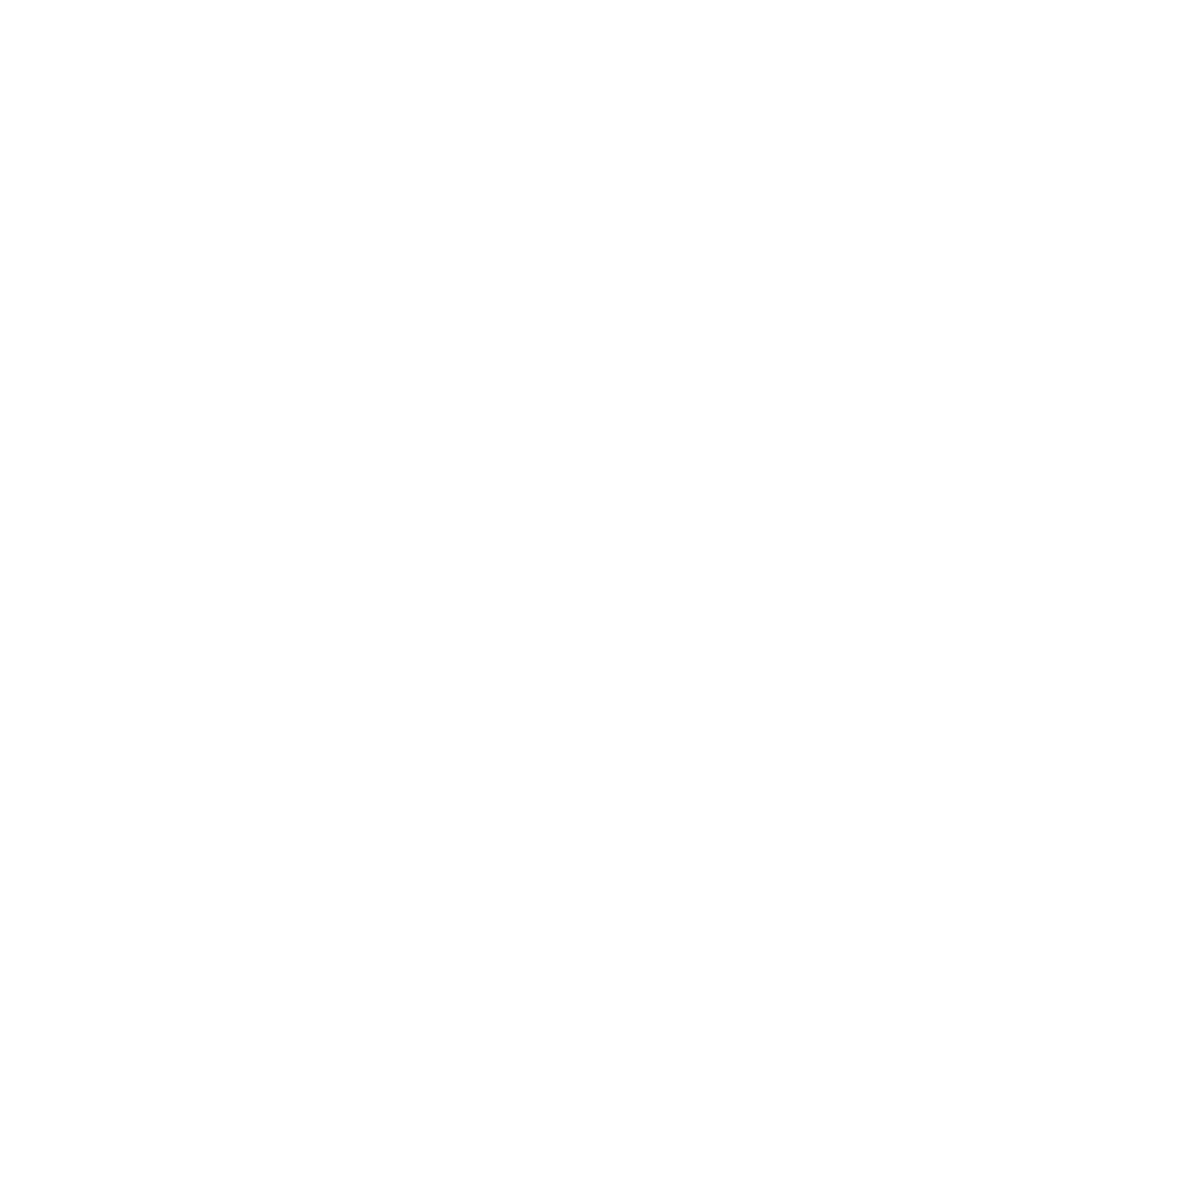 Ciudad Creativa Digital